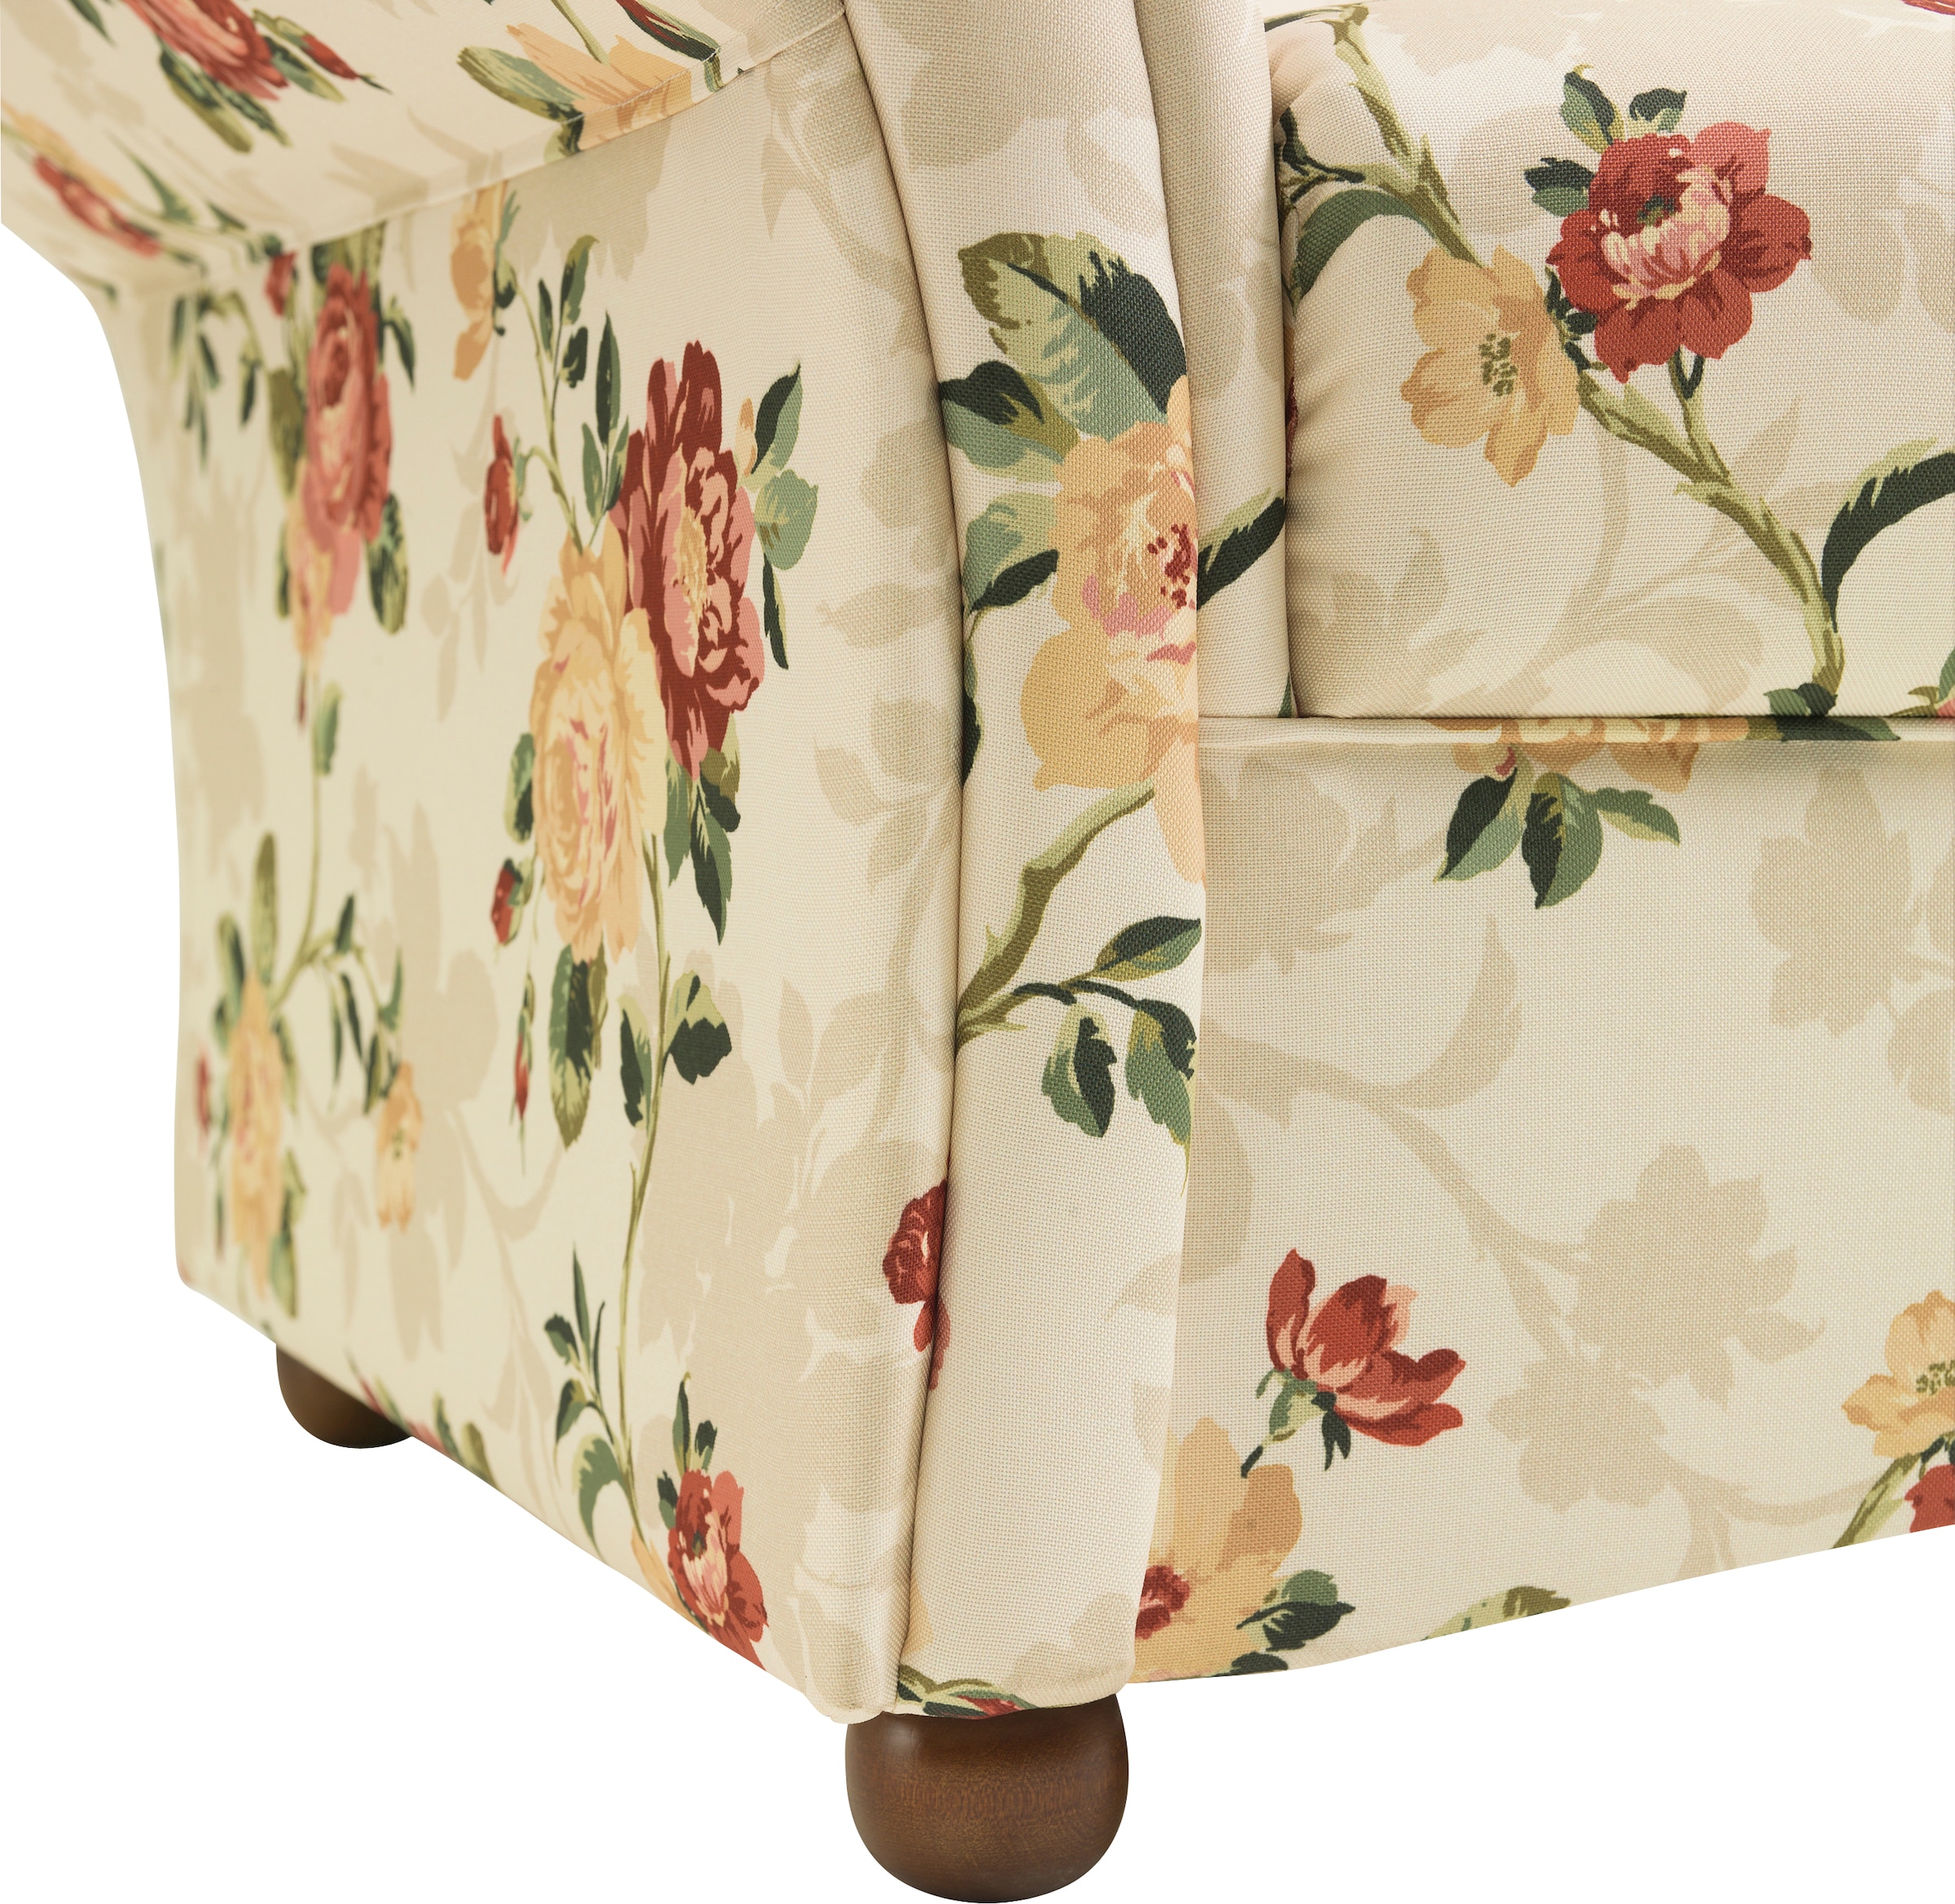 Max Winzer® Sessel, mit Holz-Kugelfüßen, Blumen